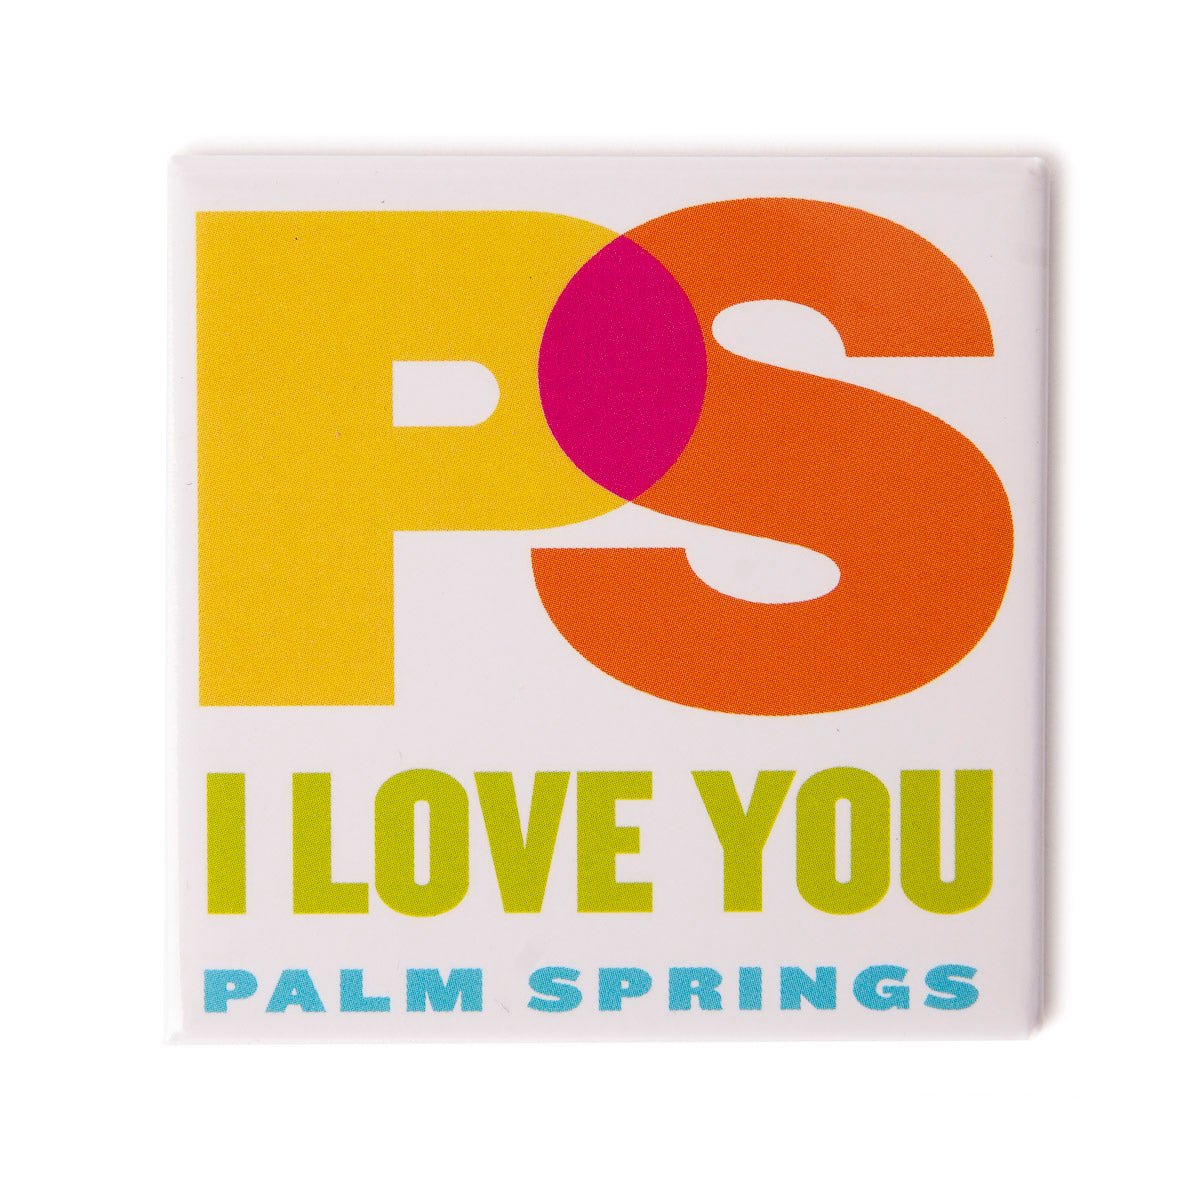 PS I Love You Magnet - Destination PSP